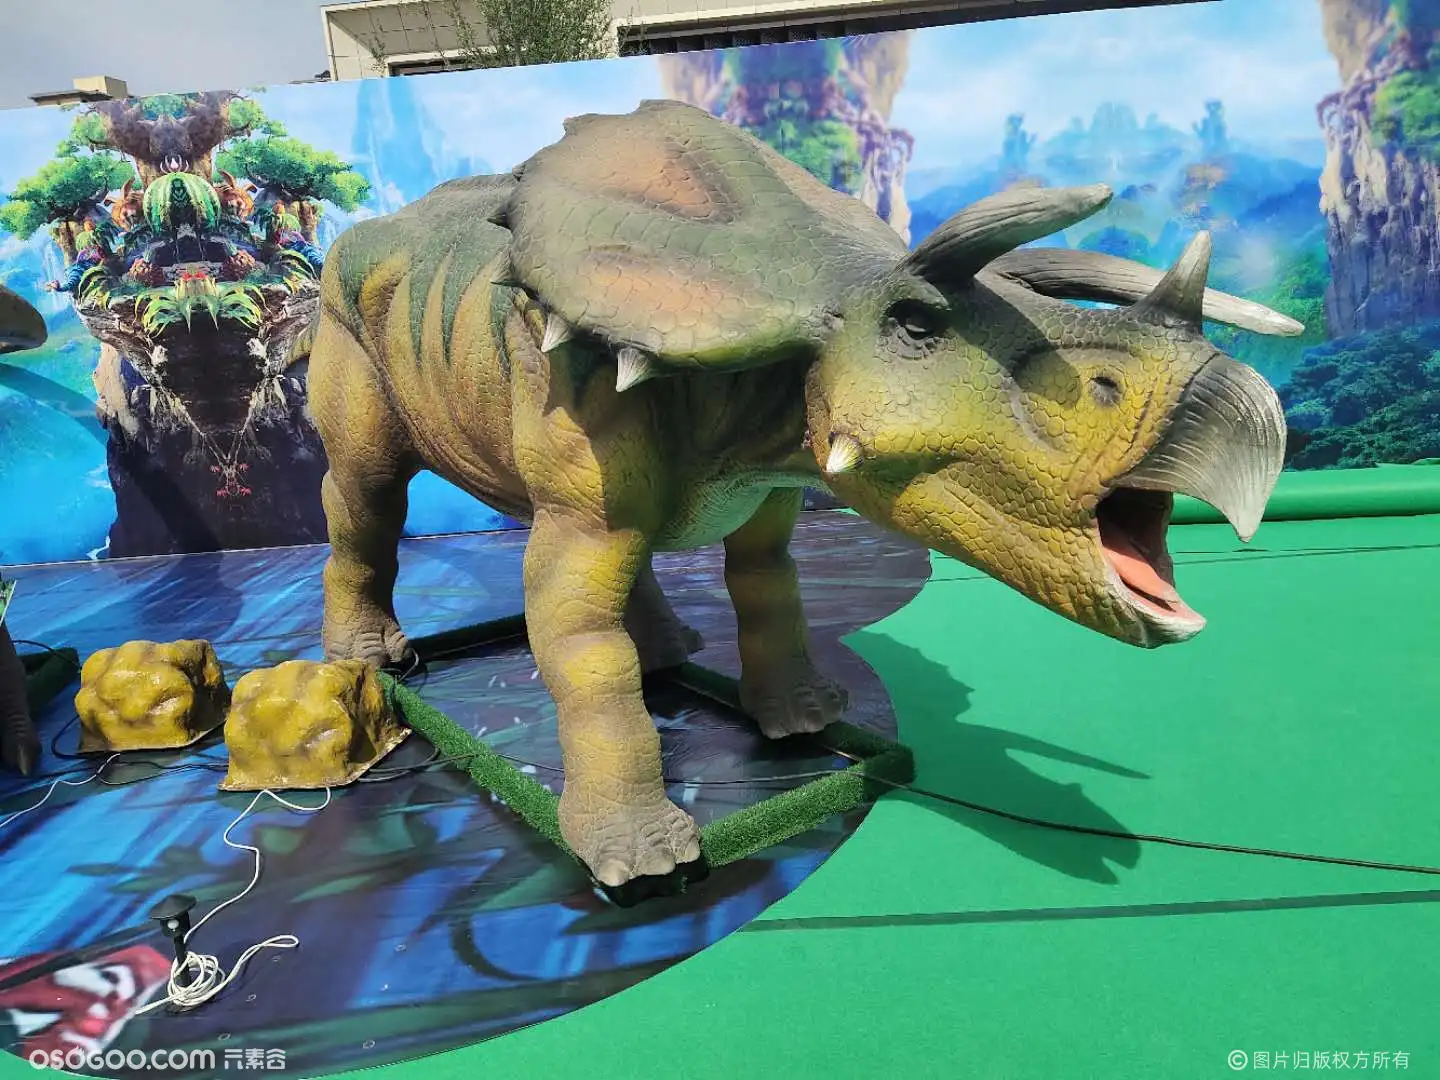 仿真恐龙主题展览大型恐龙展租赁恐龙模型展览出租出售